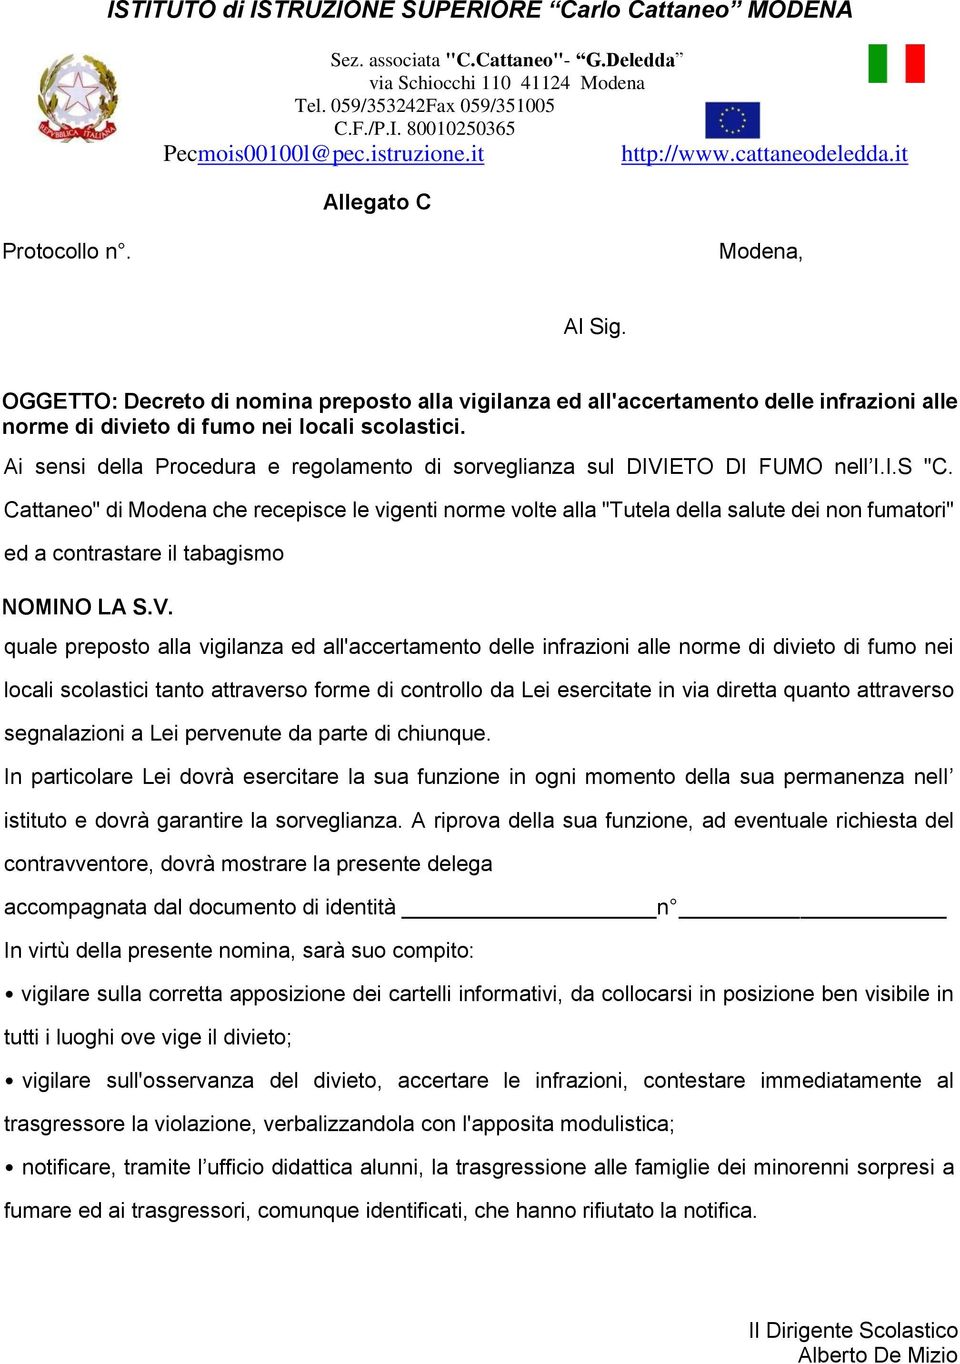 Cattaneo" di Modena che recepisce le vigenti norme volte alla "Tutela della salute dei non fumatori" ed a contrastare il tabagismo NOMINO LA S.V.